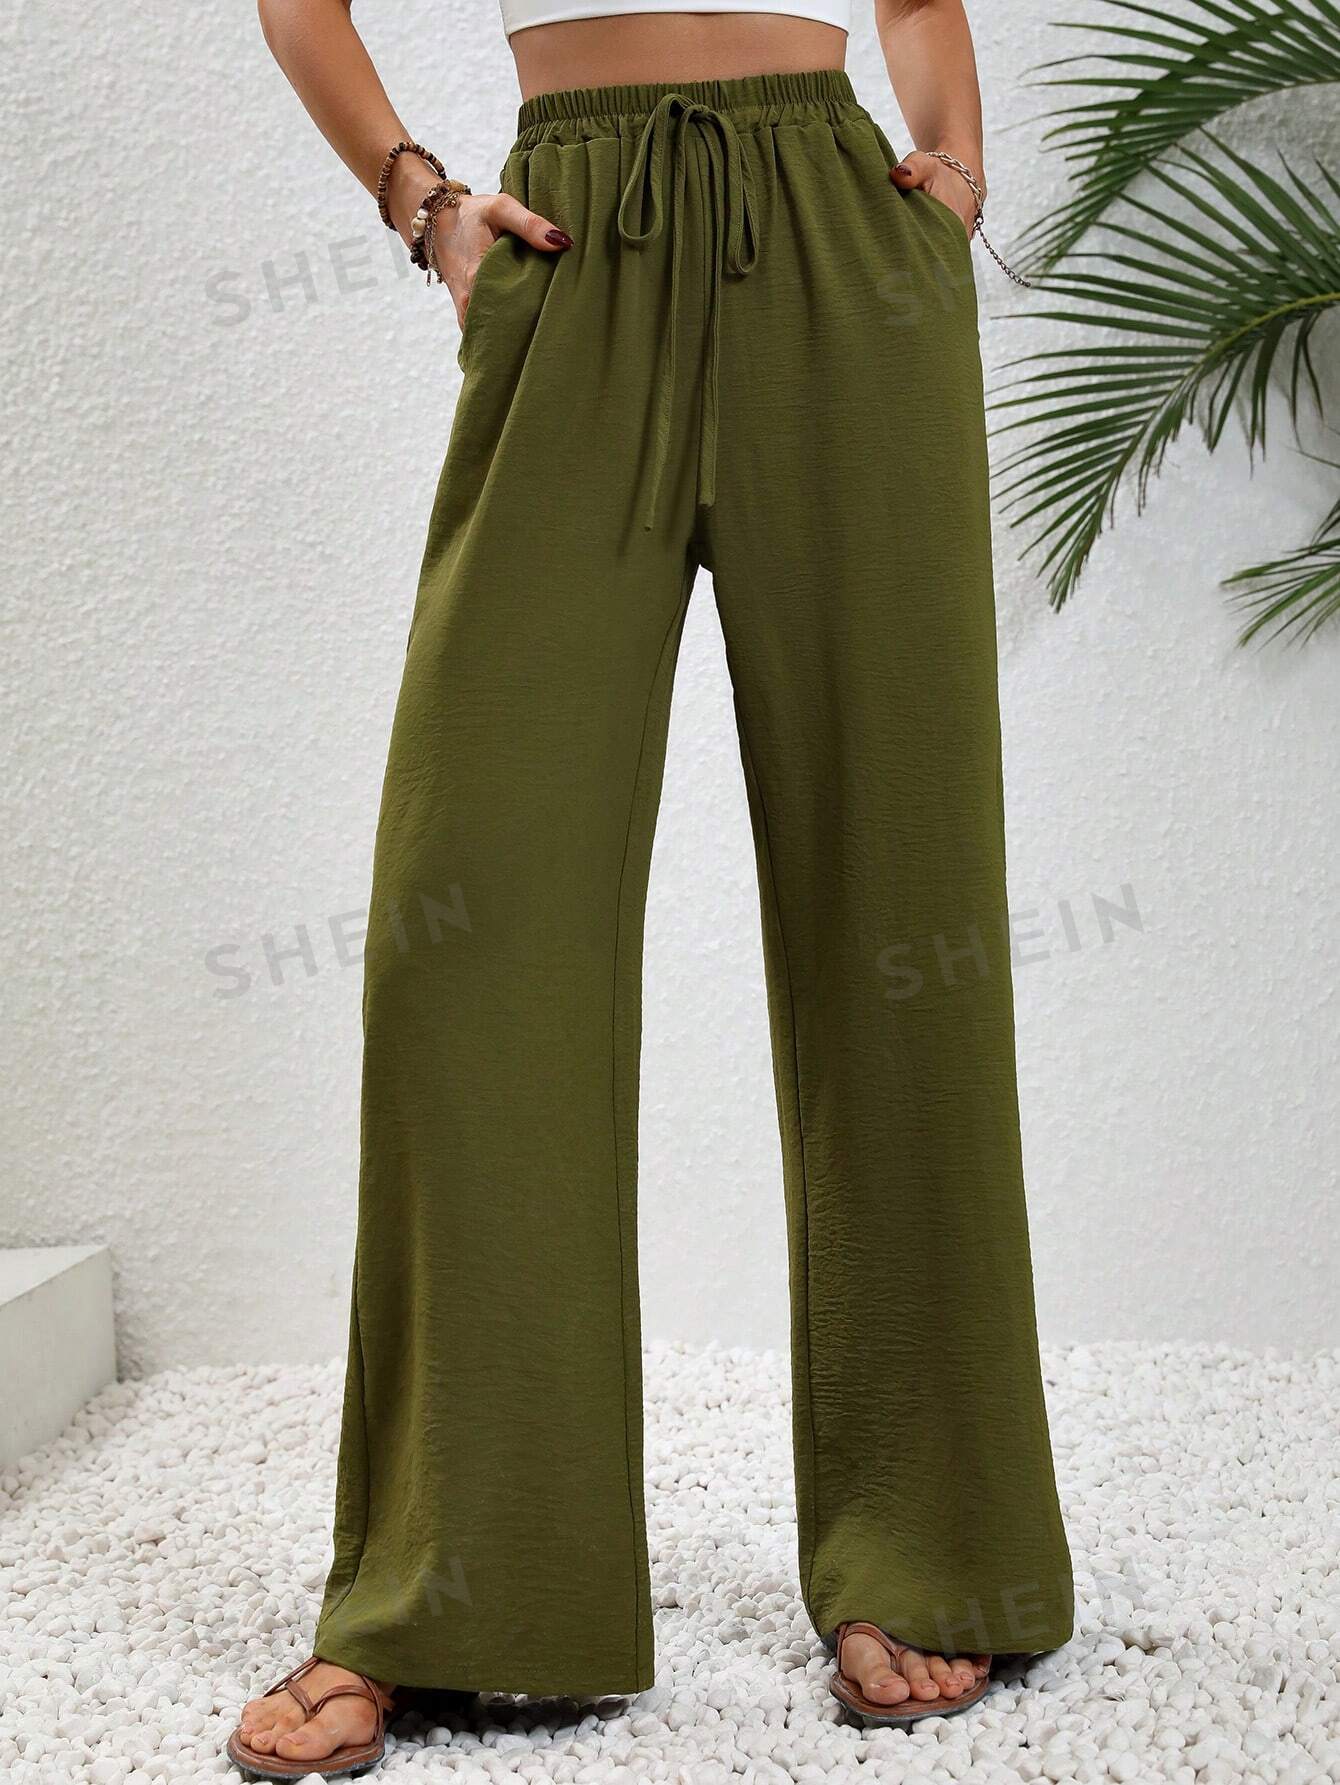 SHEIN LUNE женские однотонные длинные брюки с завышенной талией и завязками на талии и карманами, армейский зеленый